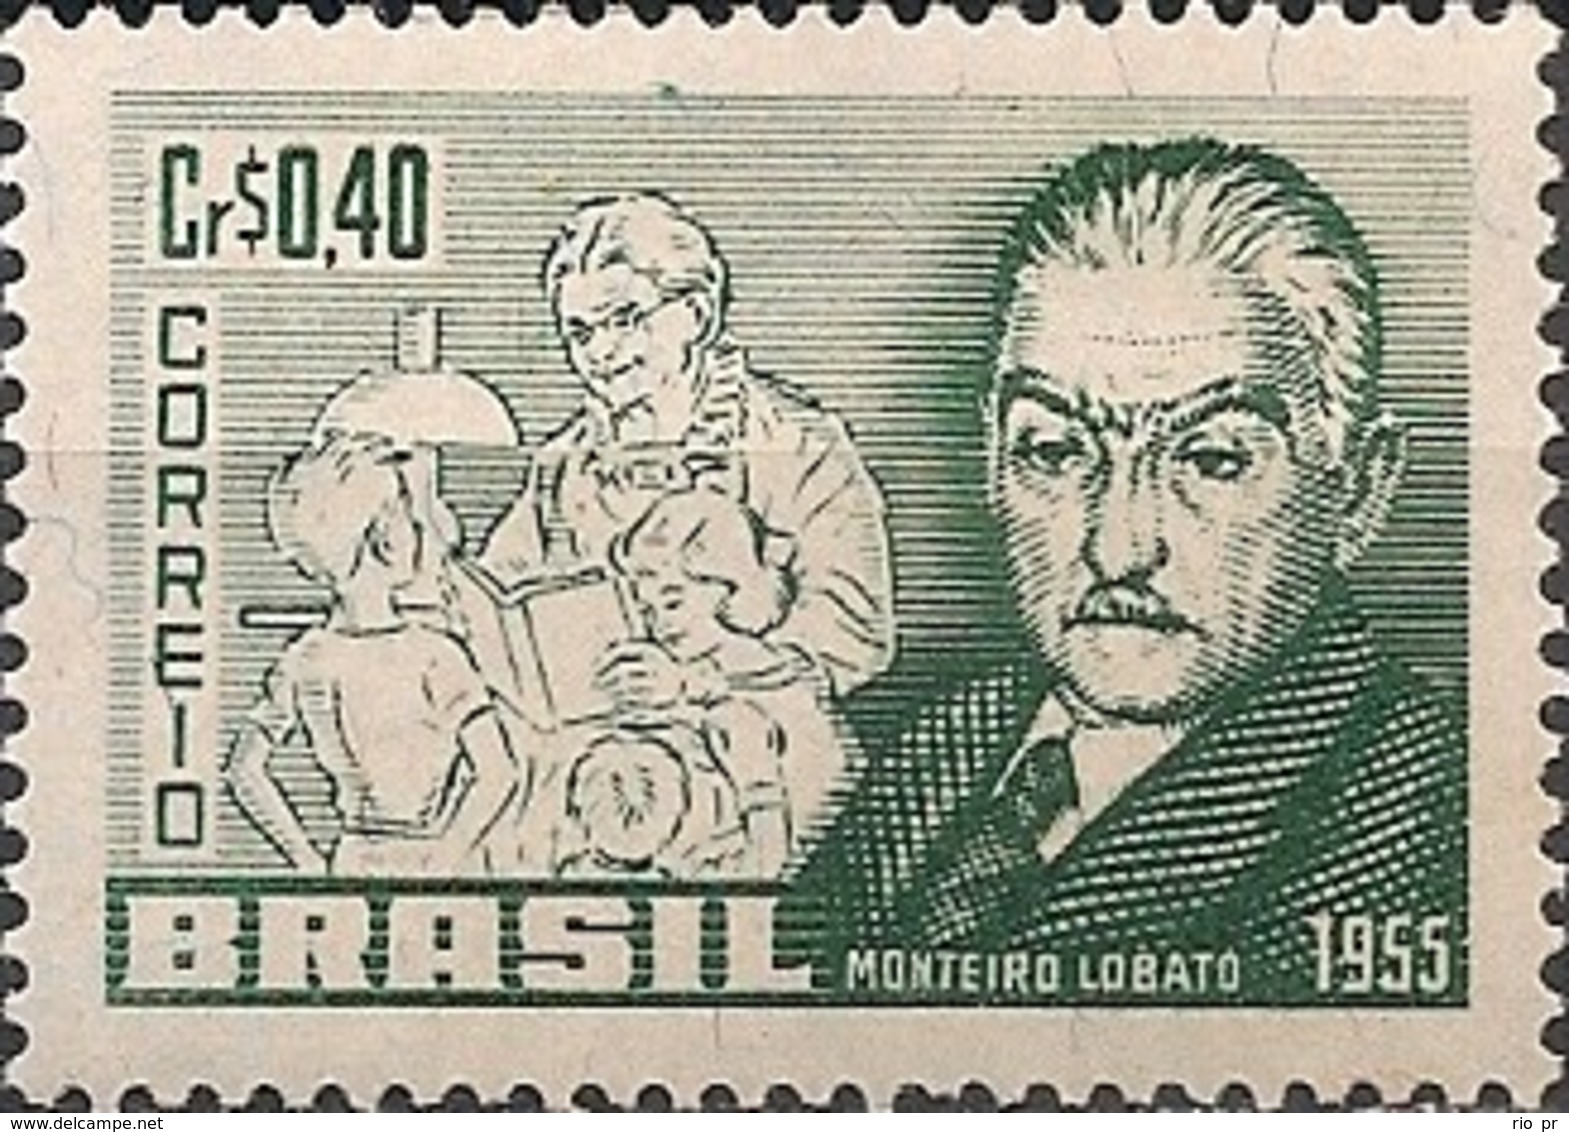 BRAZIL - MONTEIRO LOBATO (1882-1948), AUTHOR 1955 - MNH - Ongebruikt